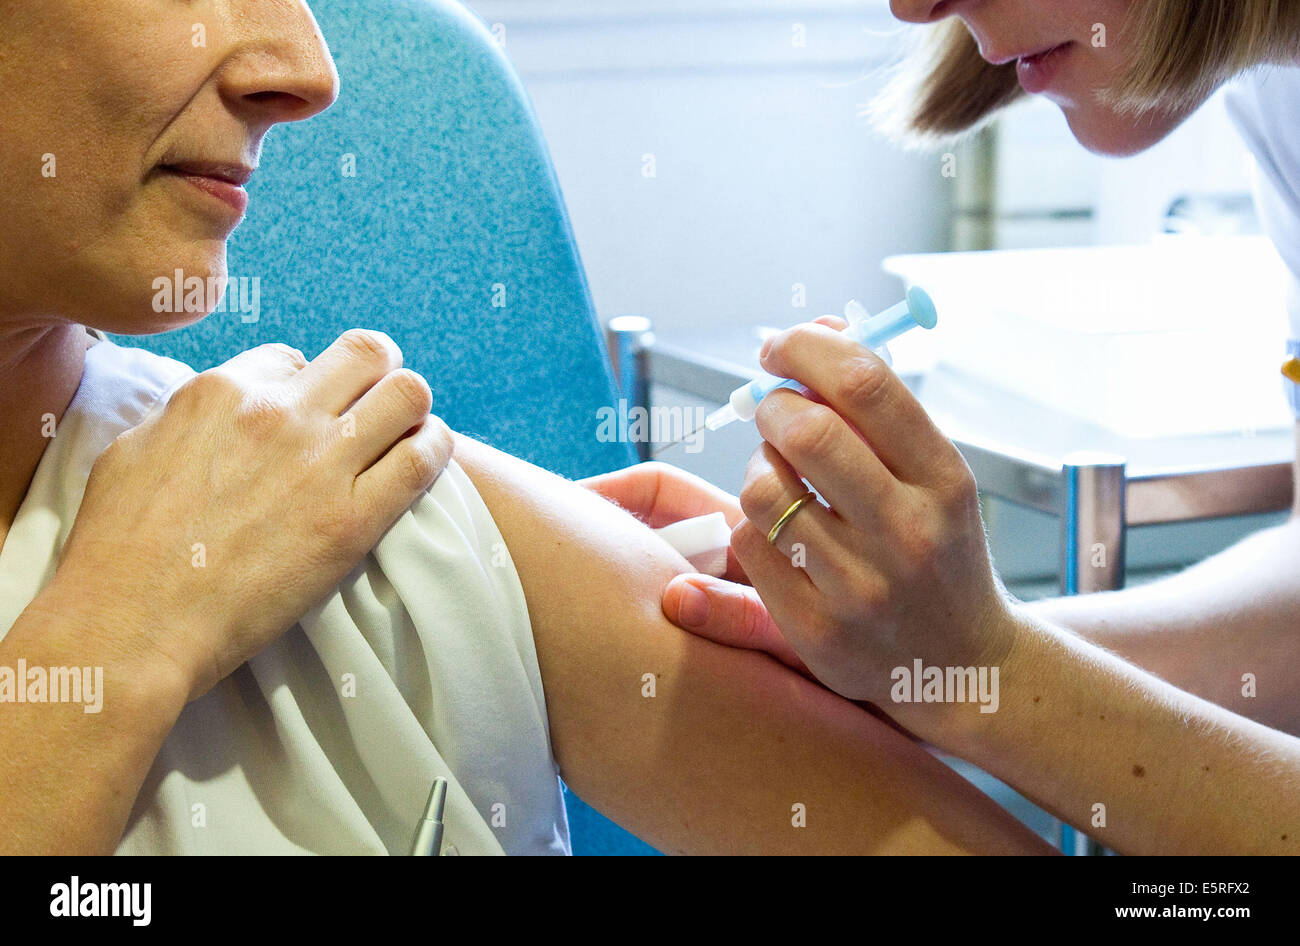 La donna la ricezione di H1N1 (influenza aviaria) vaccino.. Foto Stock